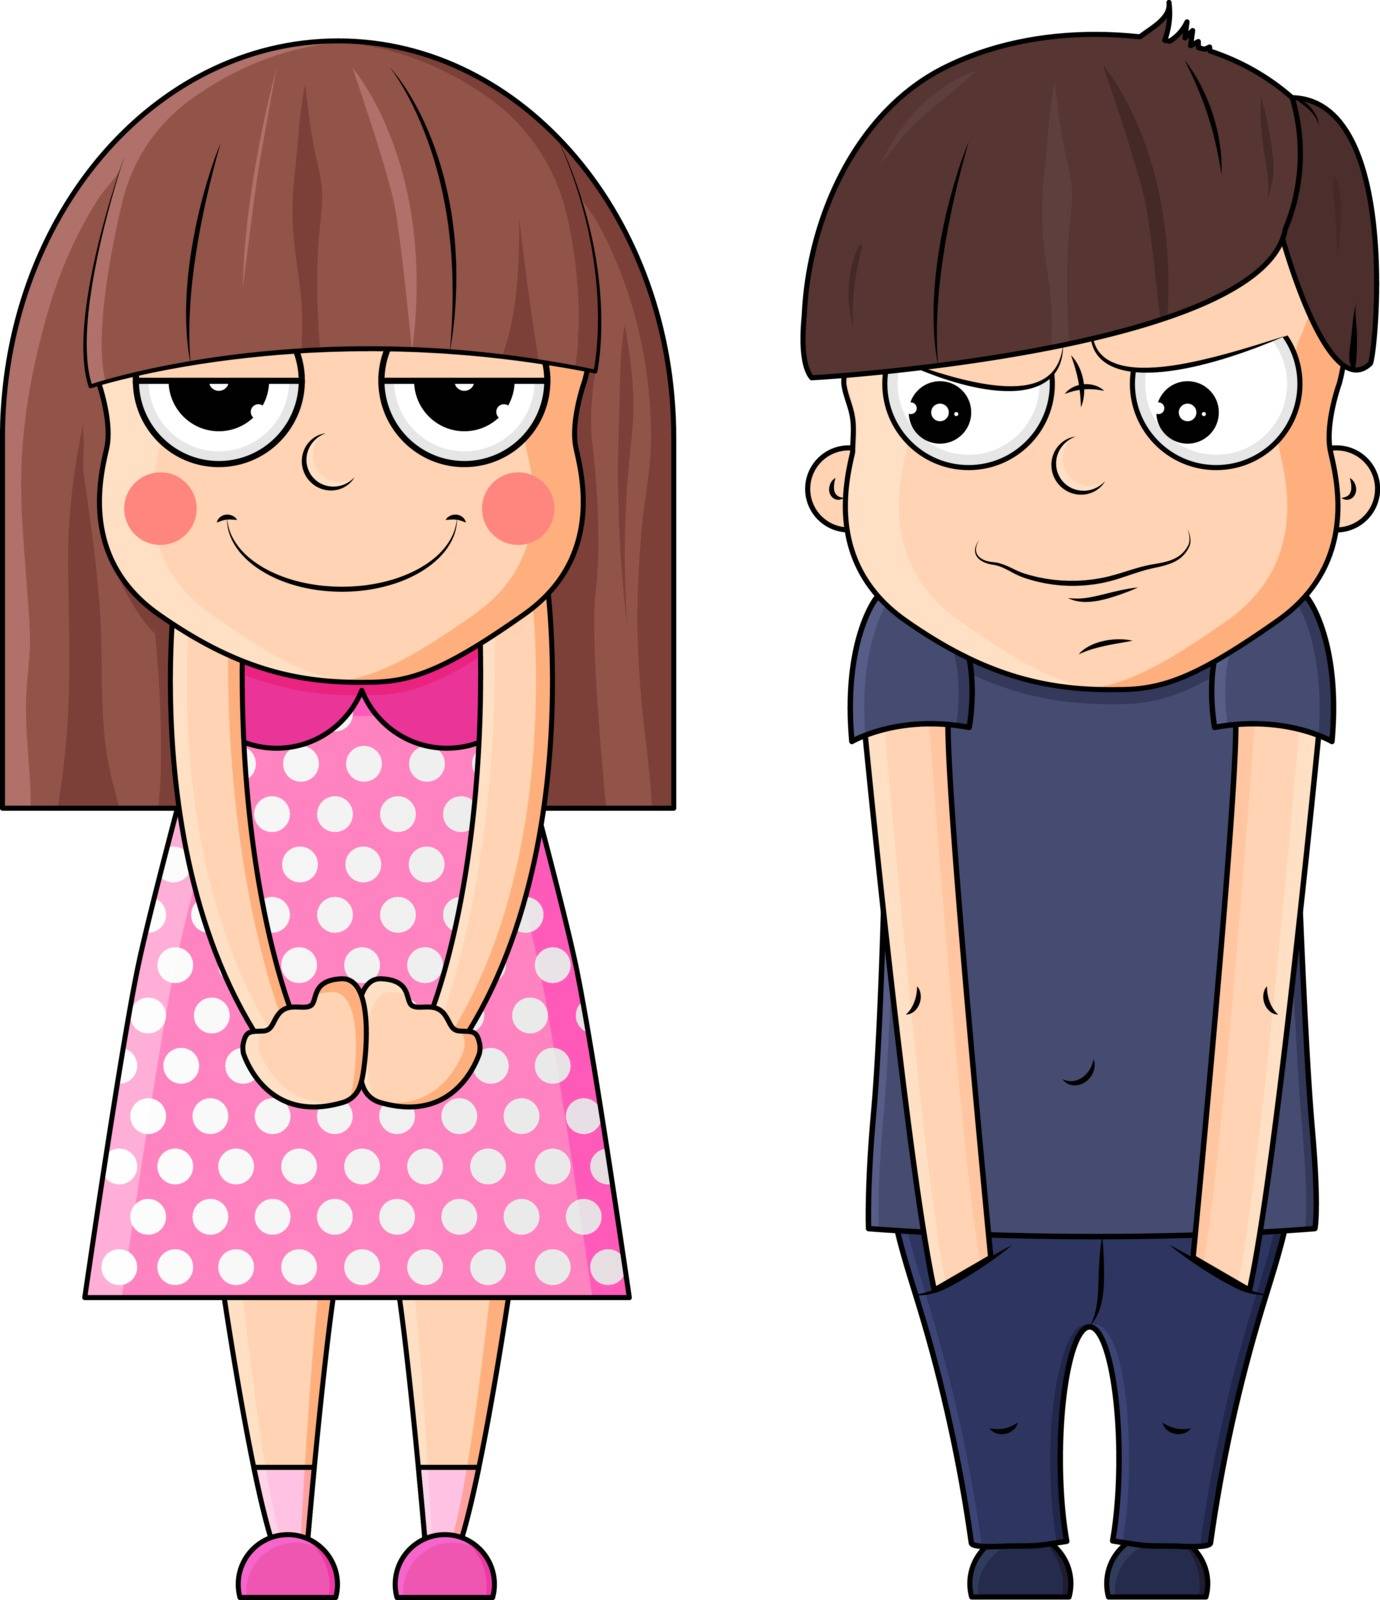 Beautiful boy and girl kawaii vector illustration. The emotion of smug